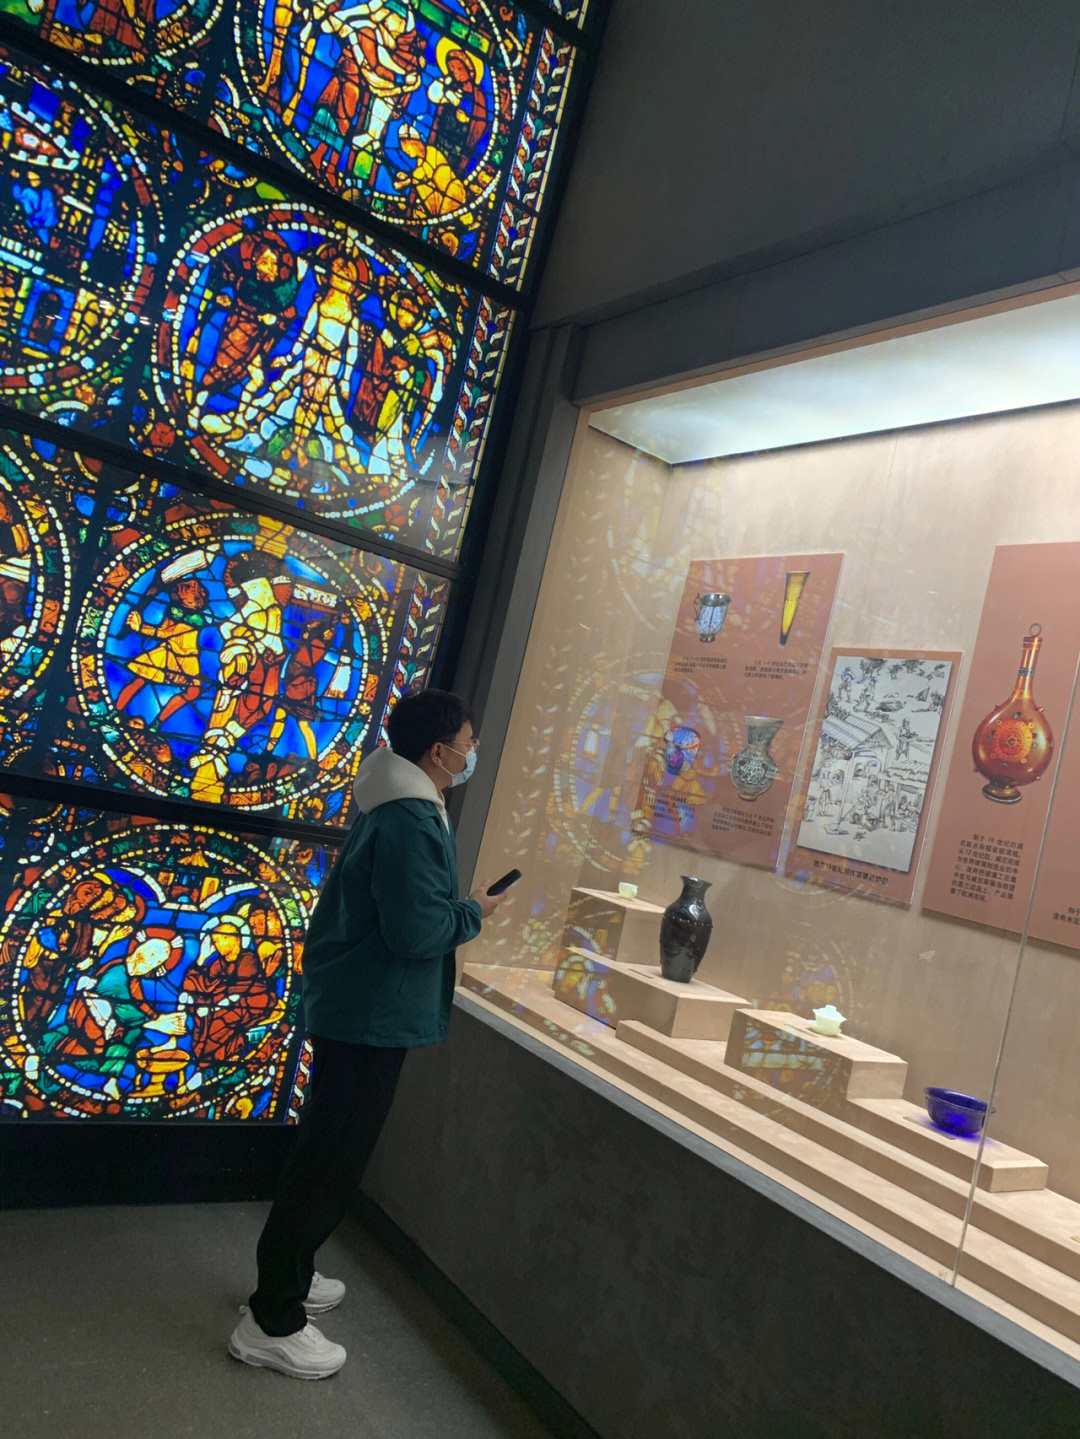 秦皇岛玻璃博物馆预约图片